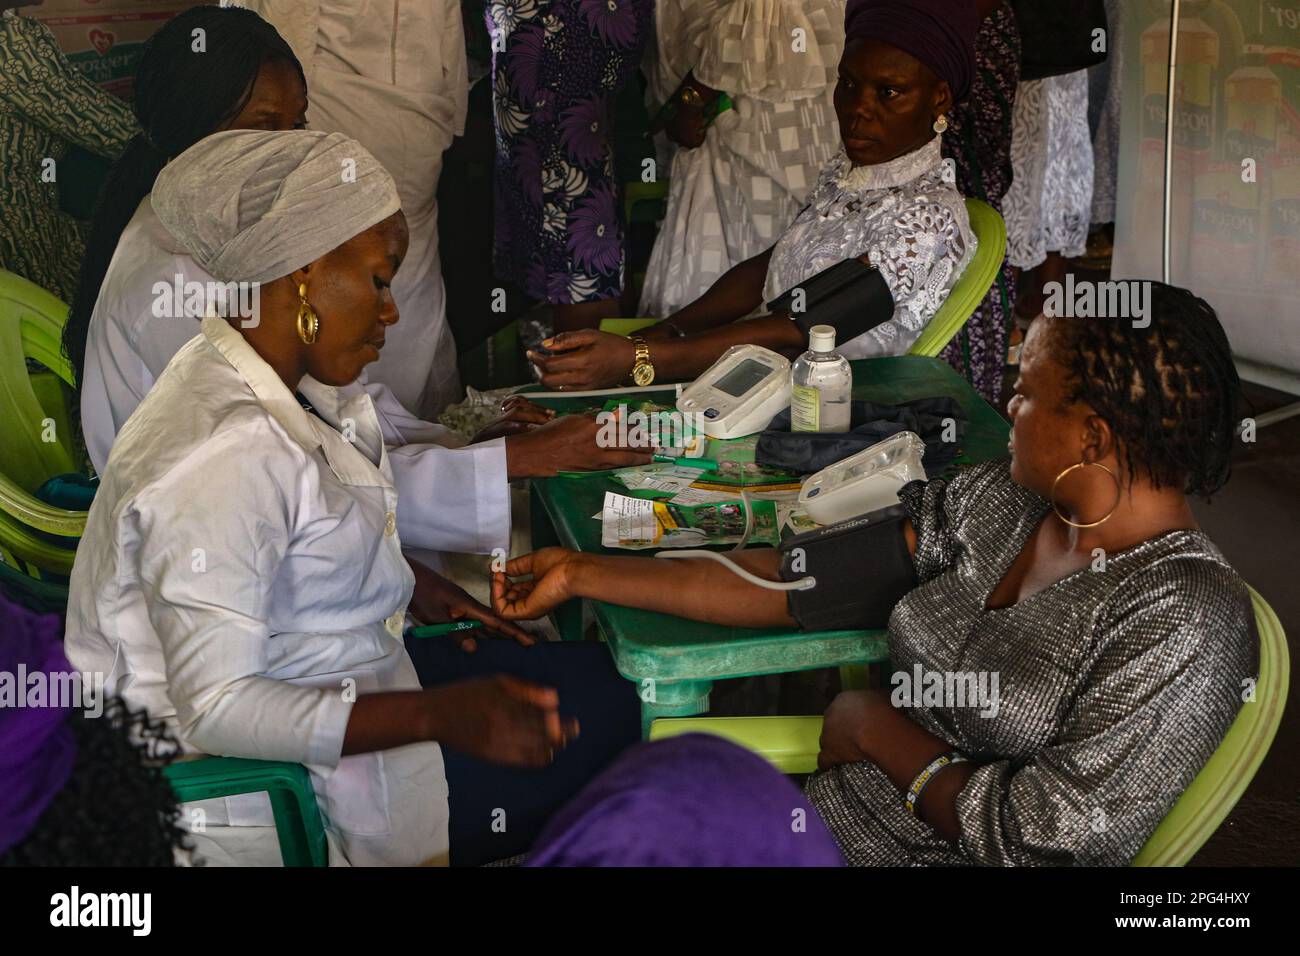 El personal médico atiende a la mujer durante un examen médico gratuito en conmemoración del Día Internacional de la Mujer en el Mobolaji Johnson Arena en Lagos, Nigeria. Foto de stock